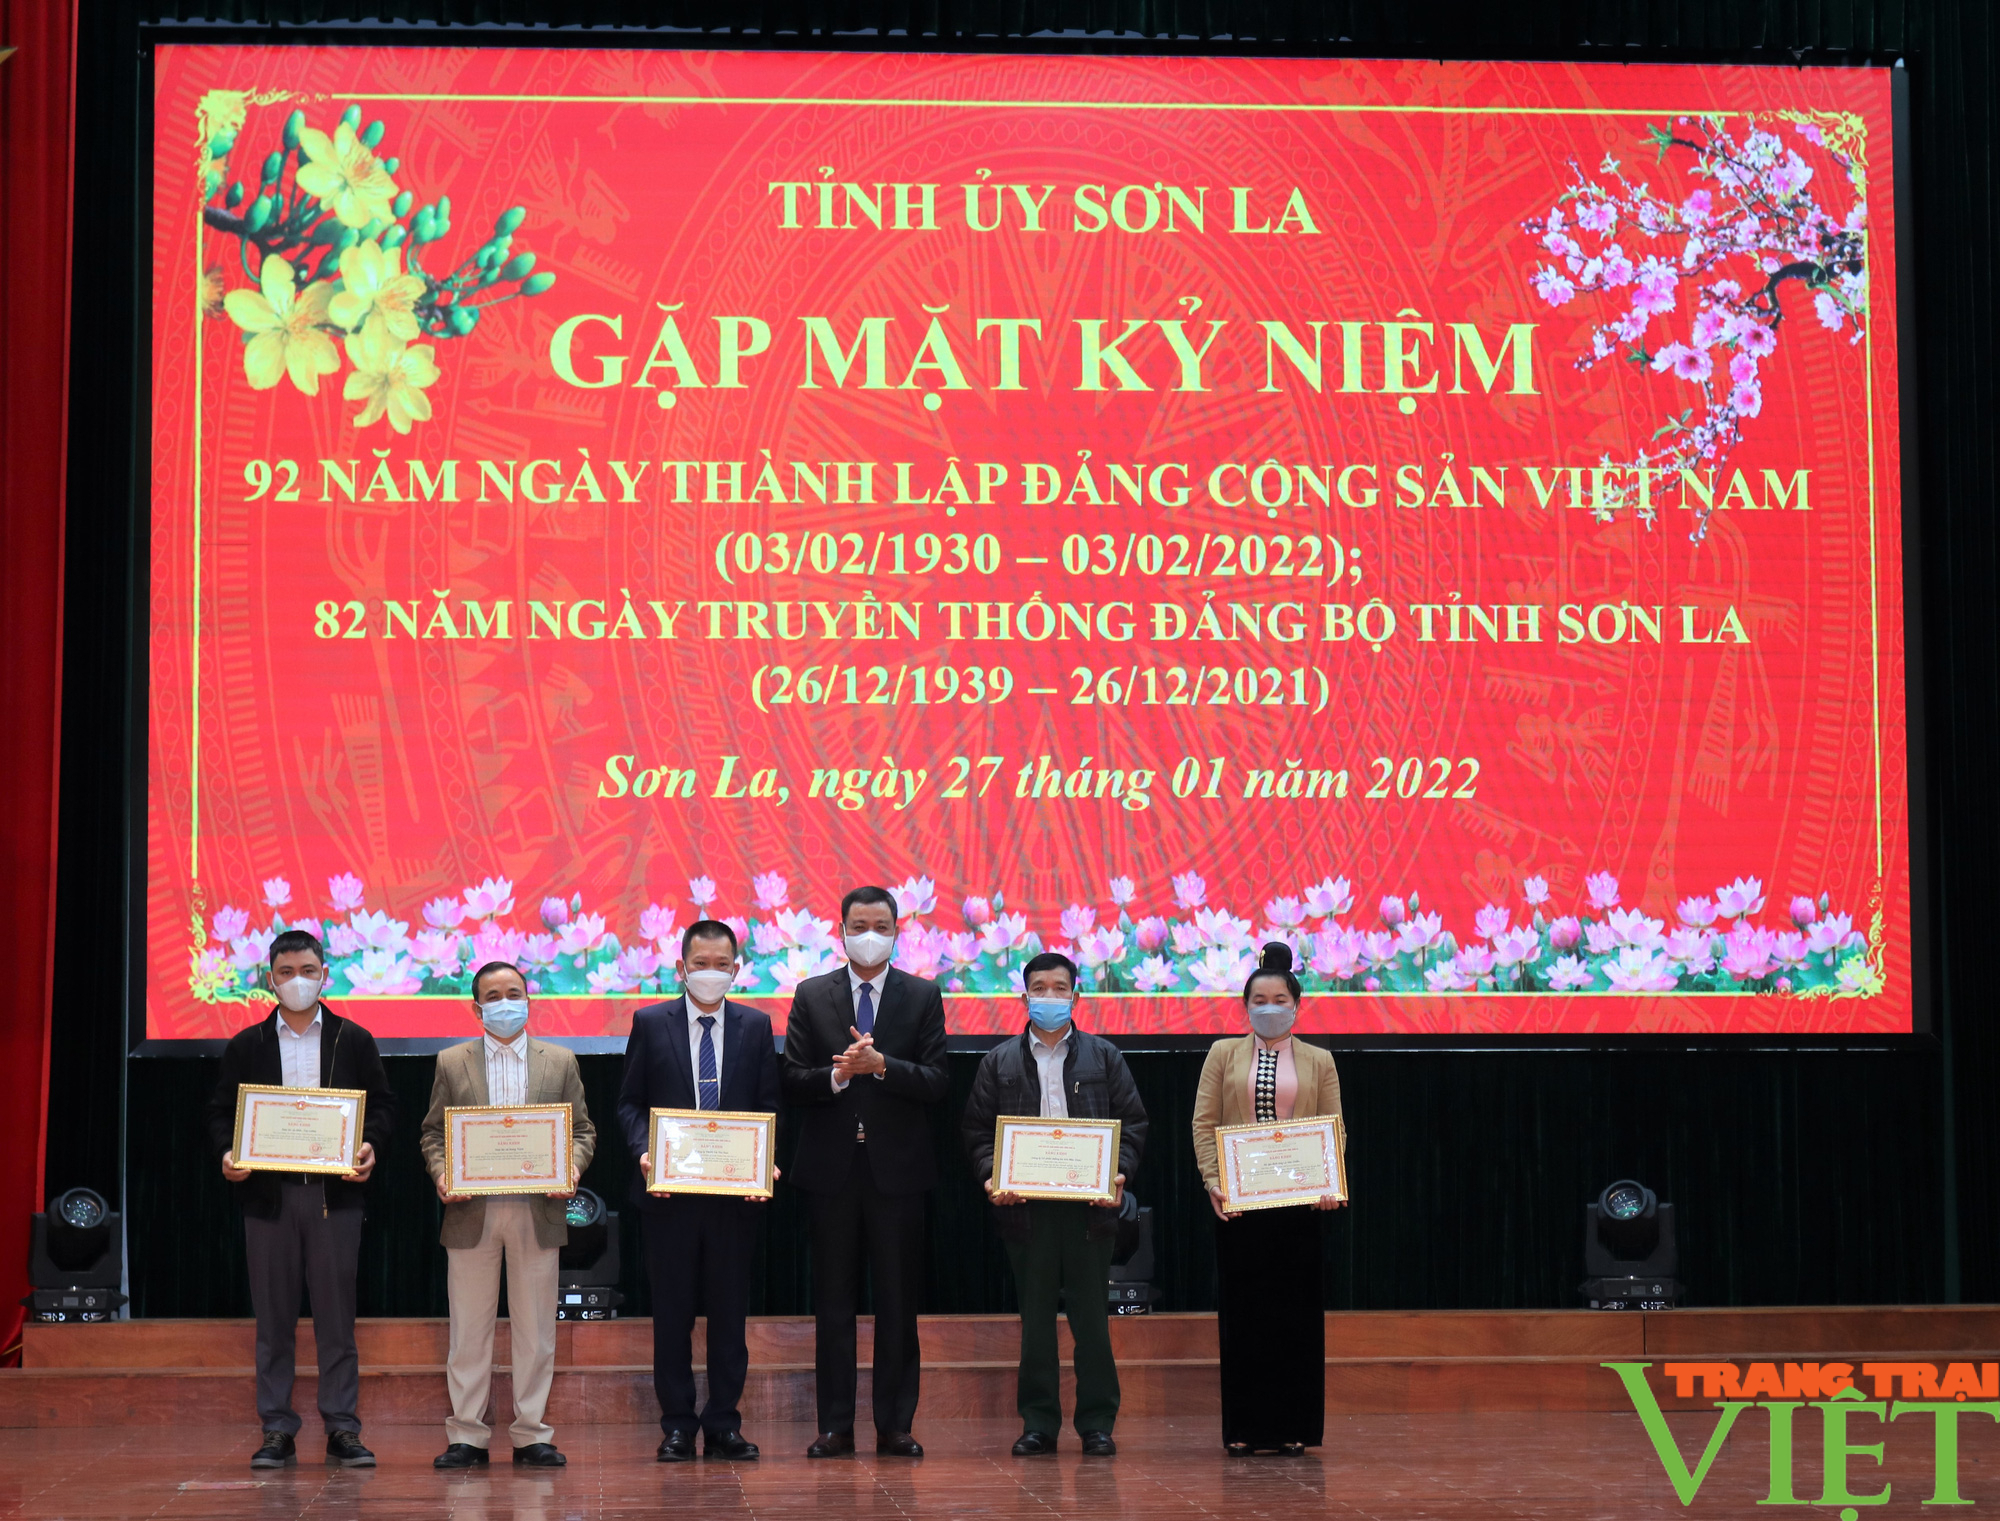 Sơn La: Gặp mặt kỷ niệm 92 năm thành lập Đảng Cộng sản Việt Nam và 82 năm Ngày truyền thống Đảng bộ tỉnh - Ảnh 9.